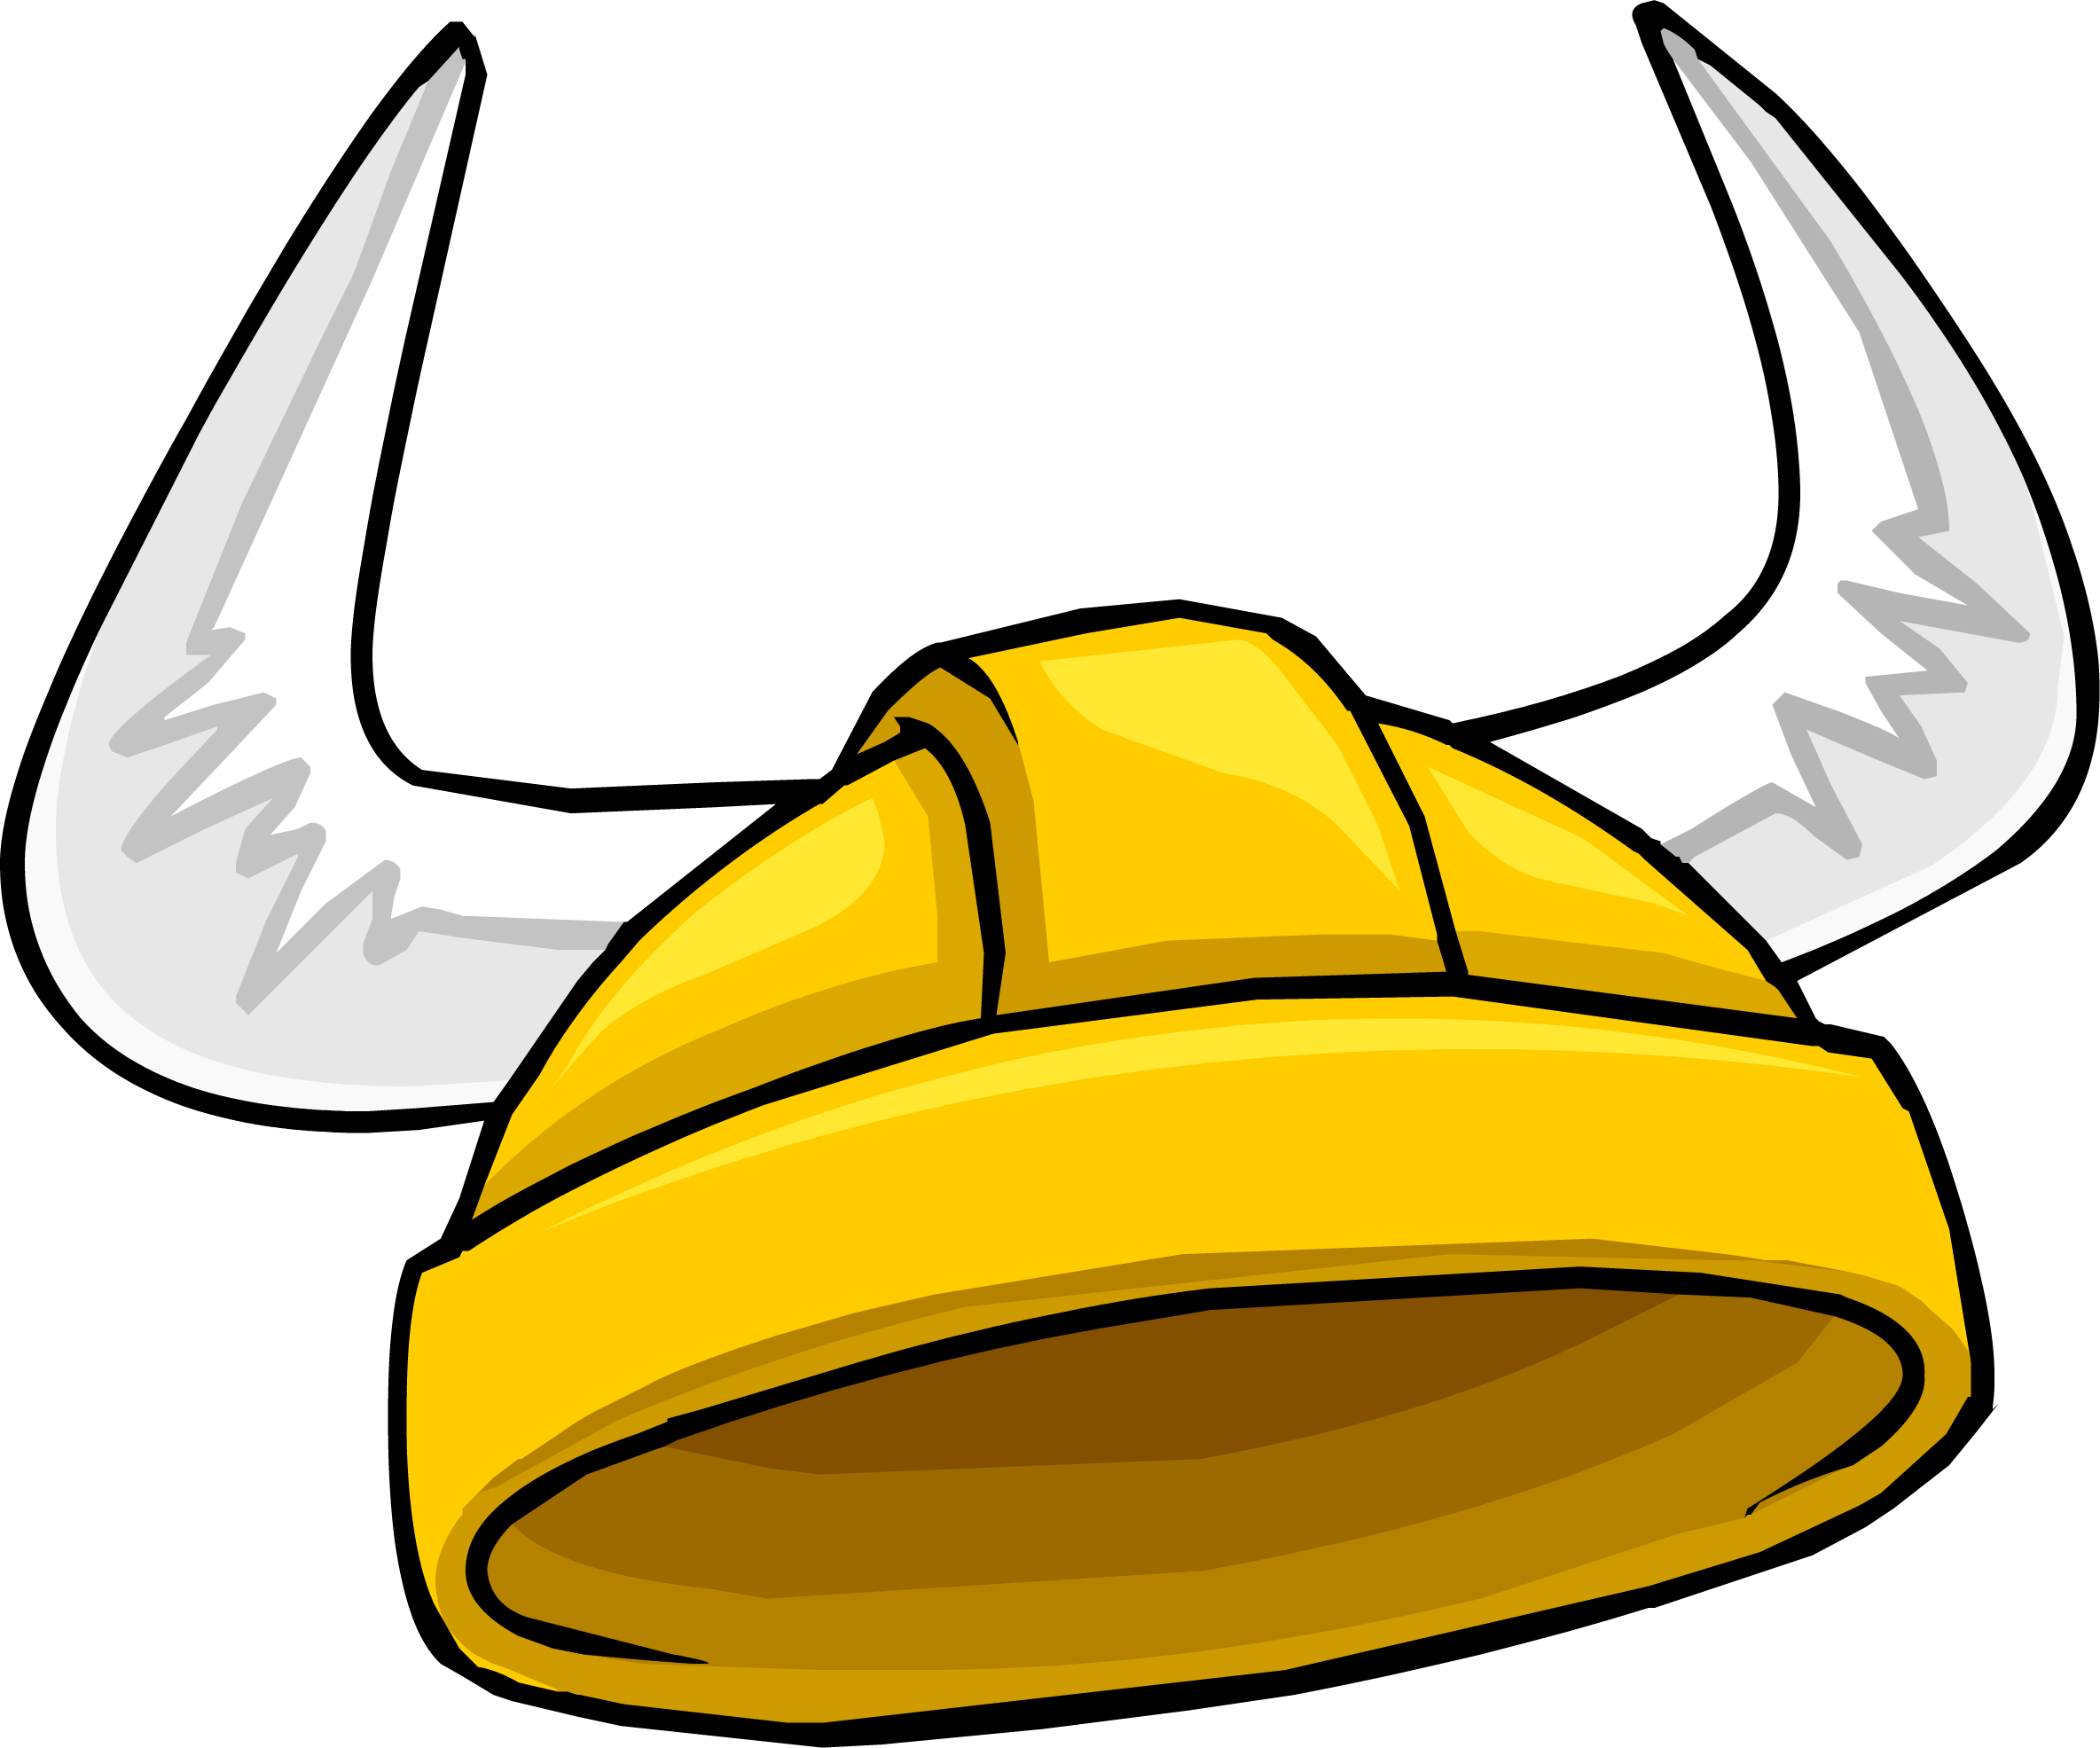 Gold Viking Helmet - Viking Helmet Club Penguin.